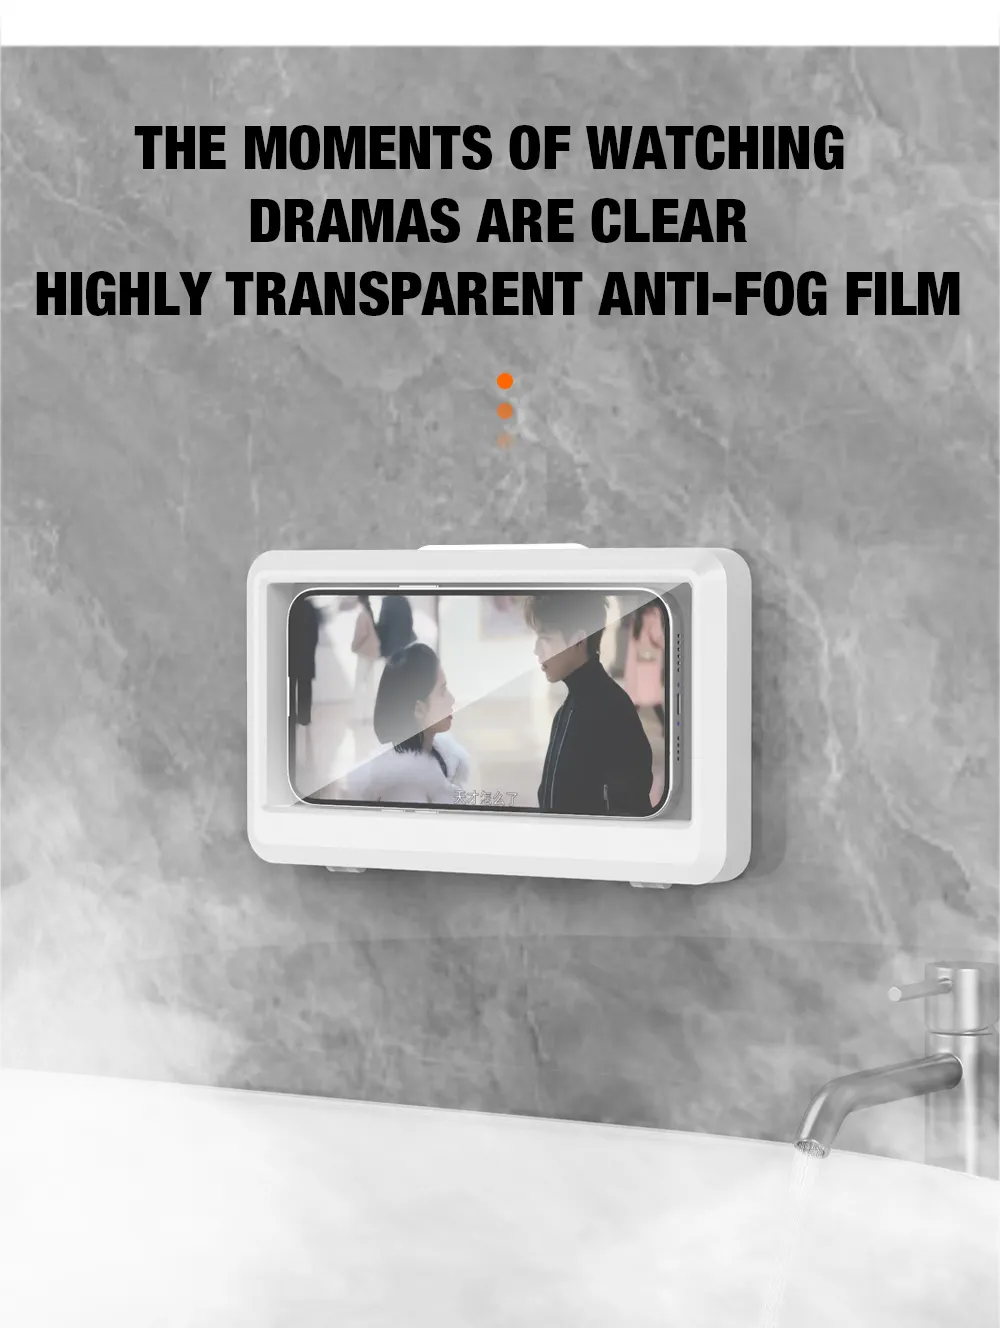 욕실 안티 김서림 스티커 벽걸이 대형 샤워 전화 홀더 방수 범용 360 도 회전 샤워 휴대 전화 스탠드